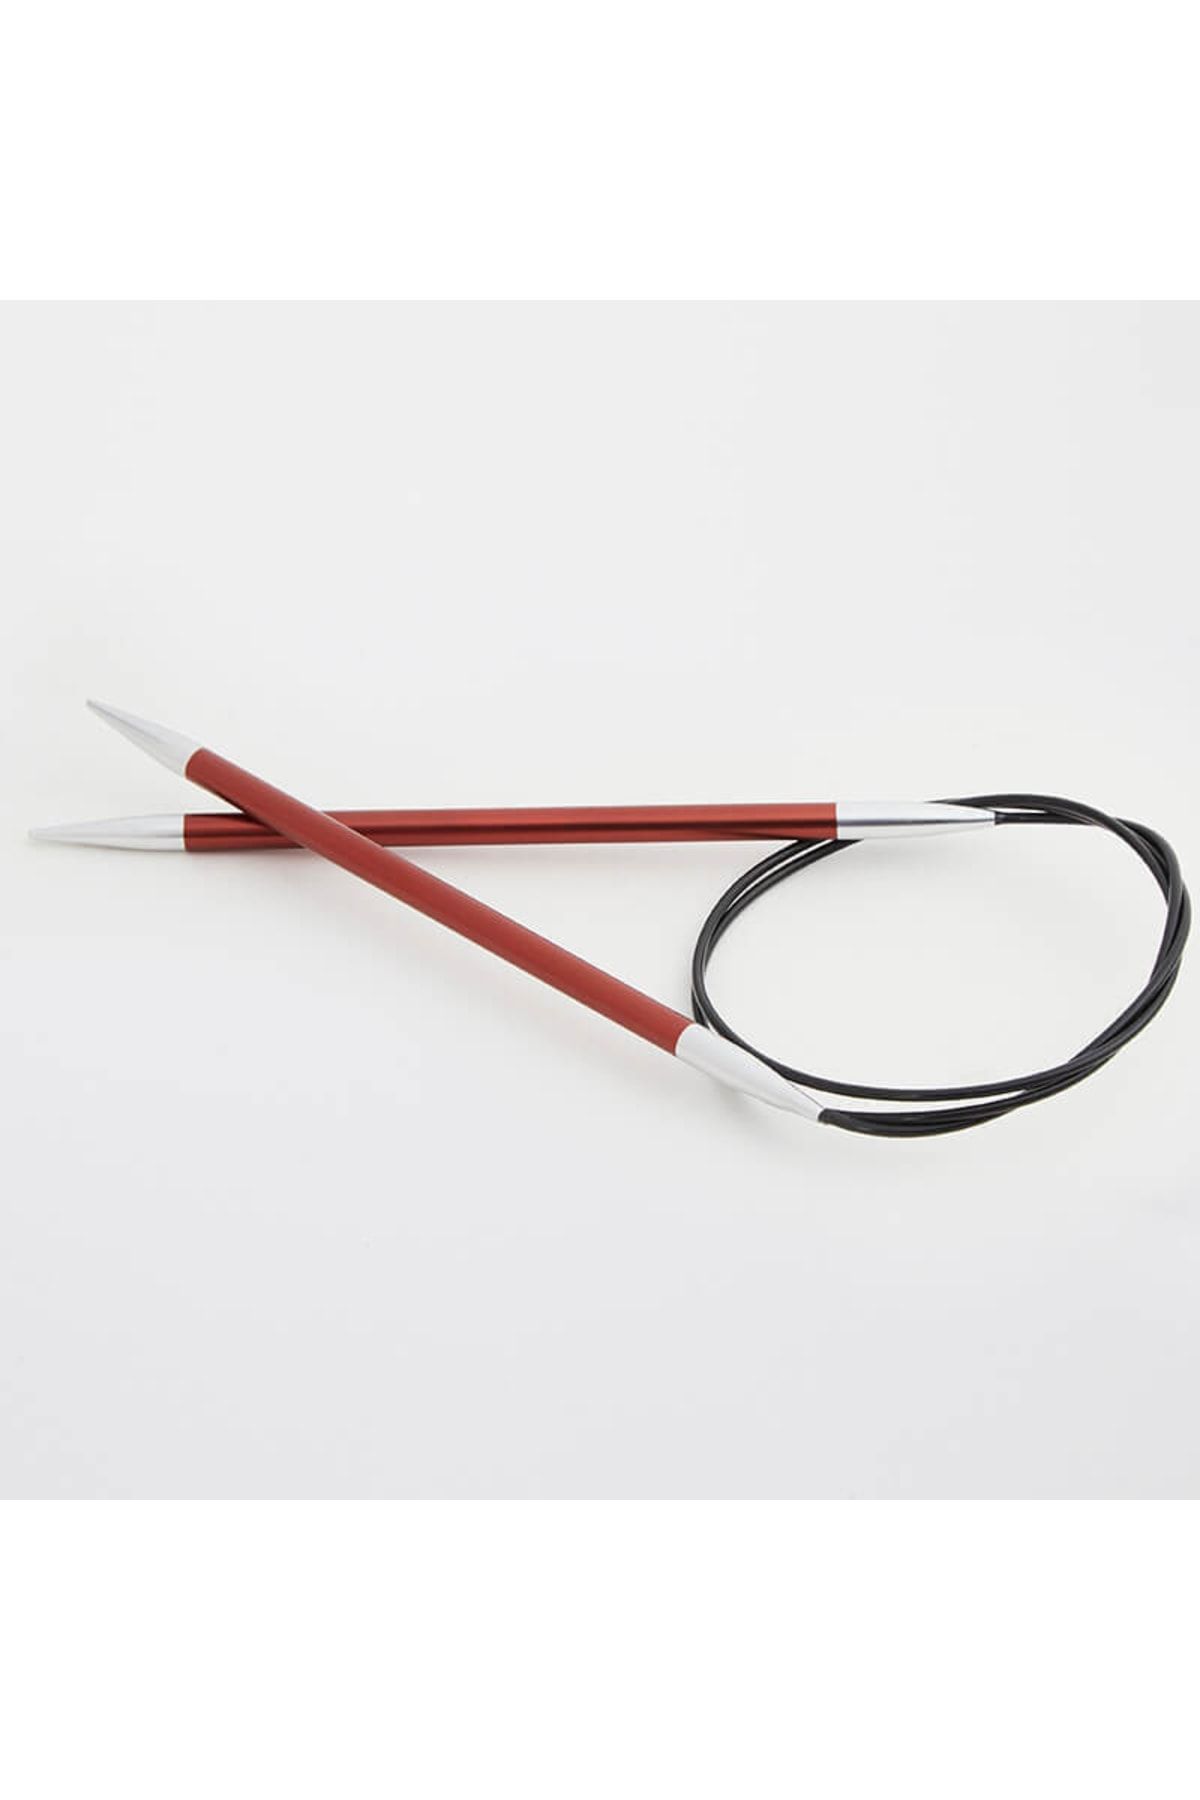 Knitpro Zing Sabit Misinalı Şiş 100cm / 5,50mm